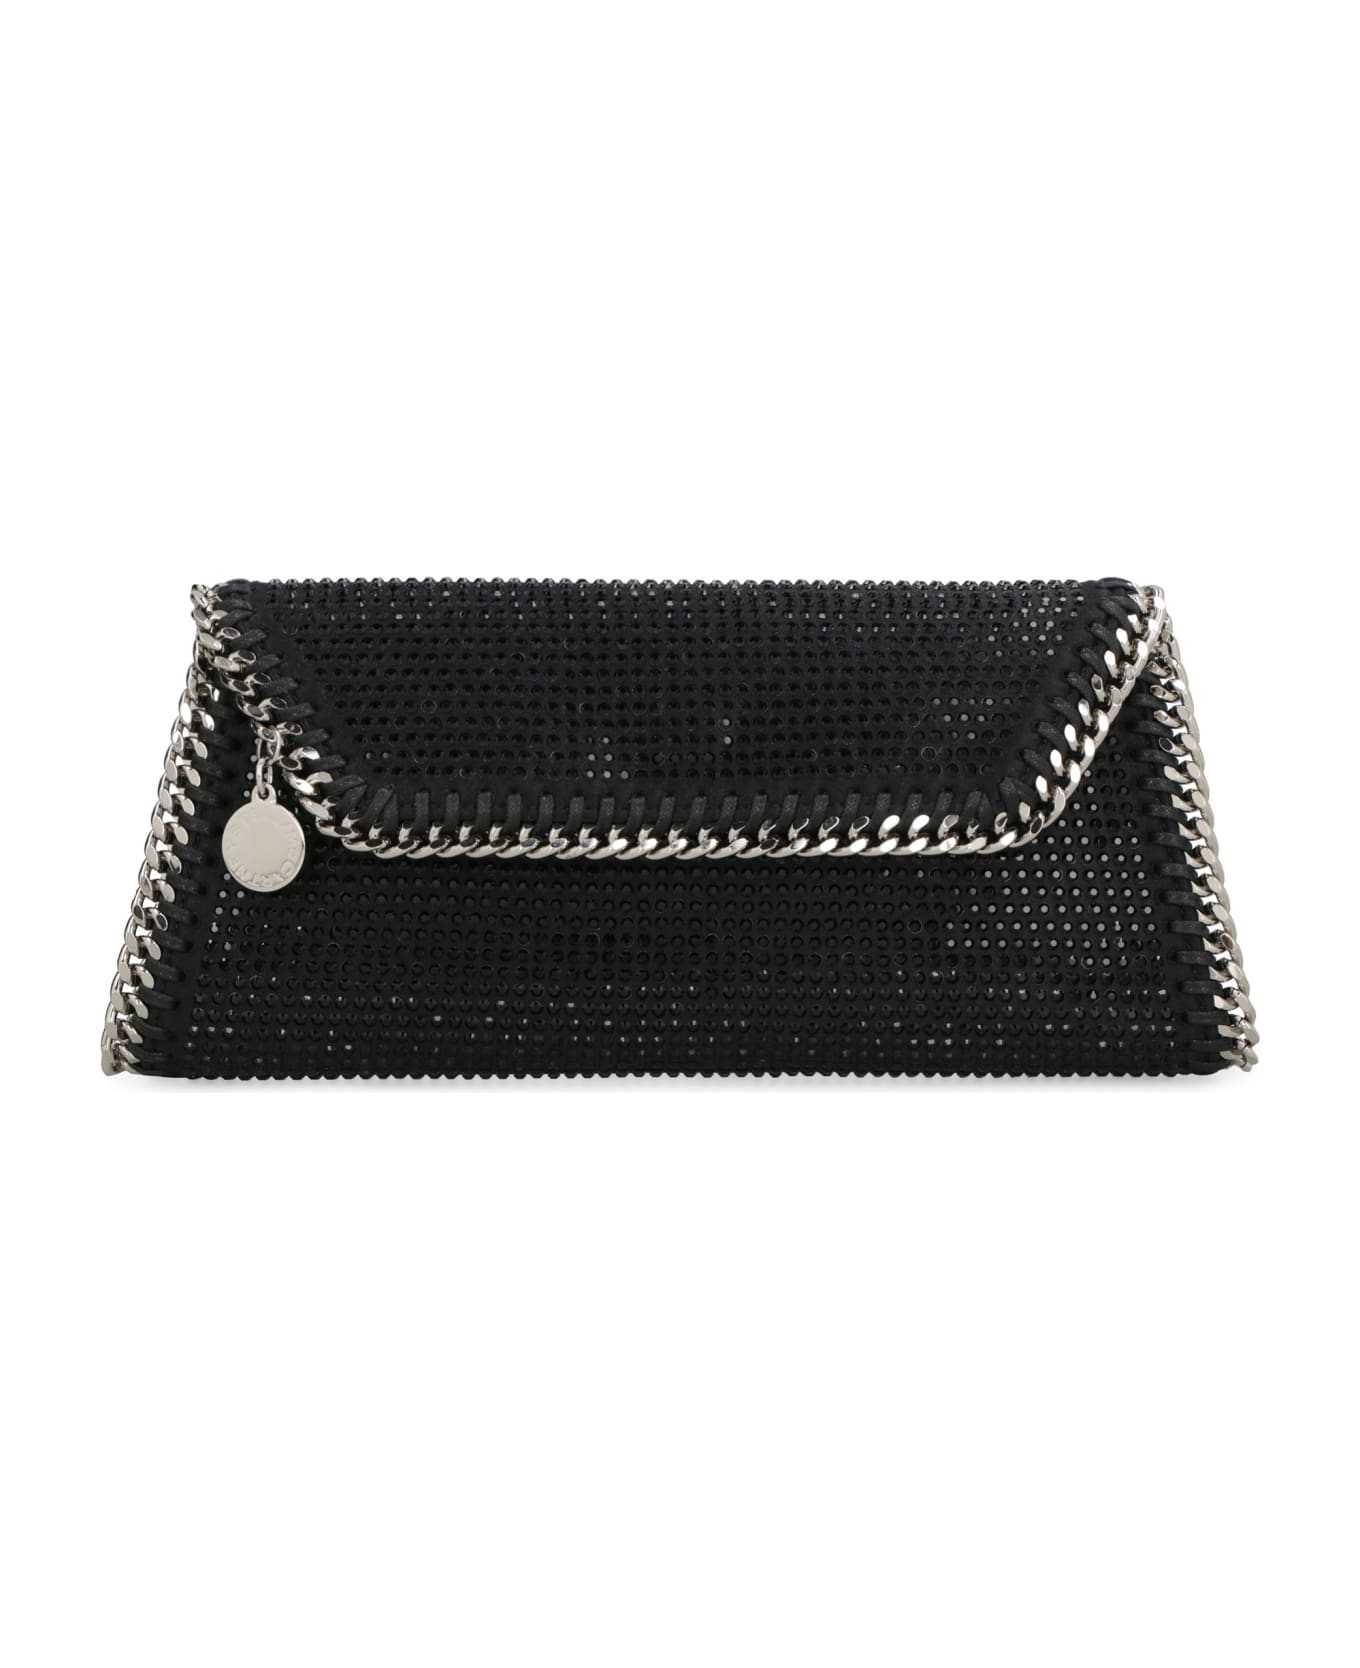 Stella McCartney Falabella Embellished Clutch Bag - black クラッチバッグ